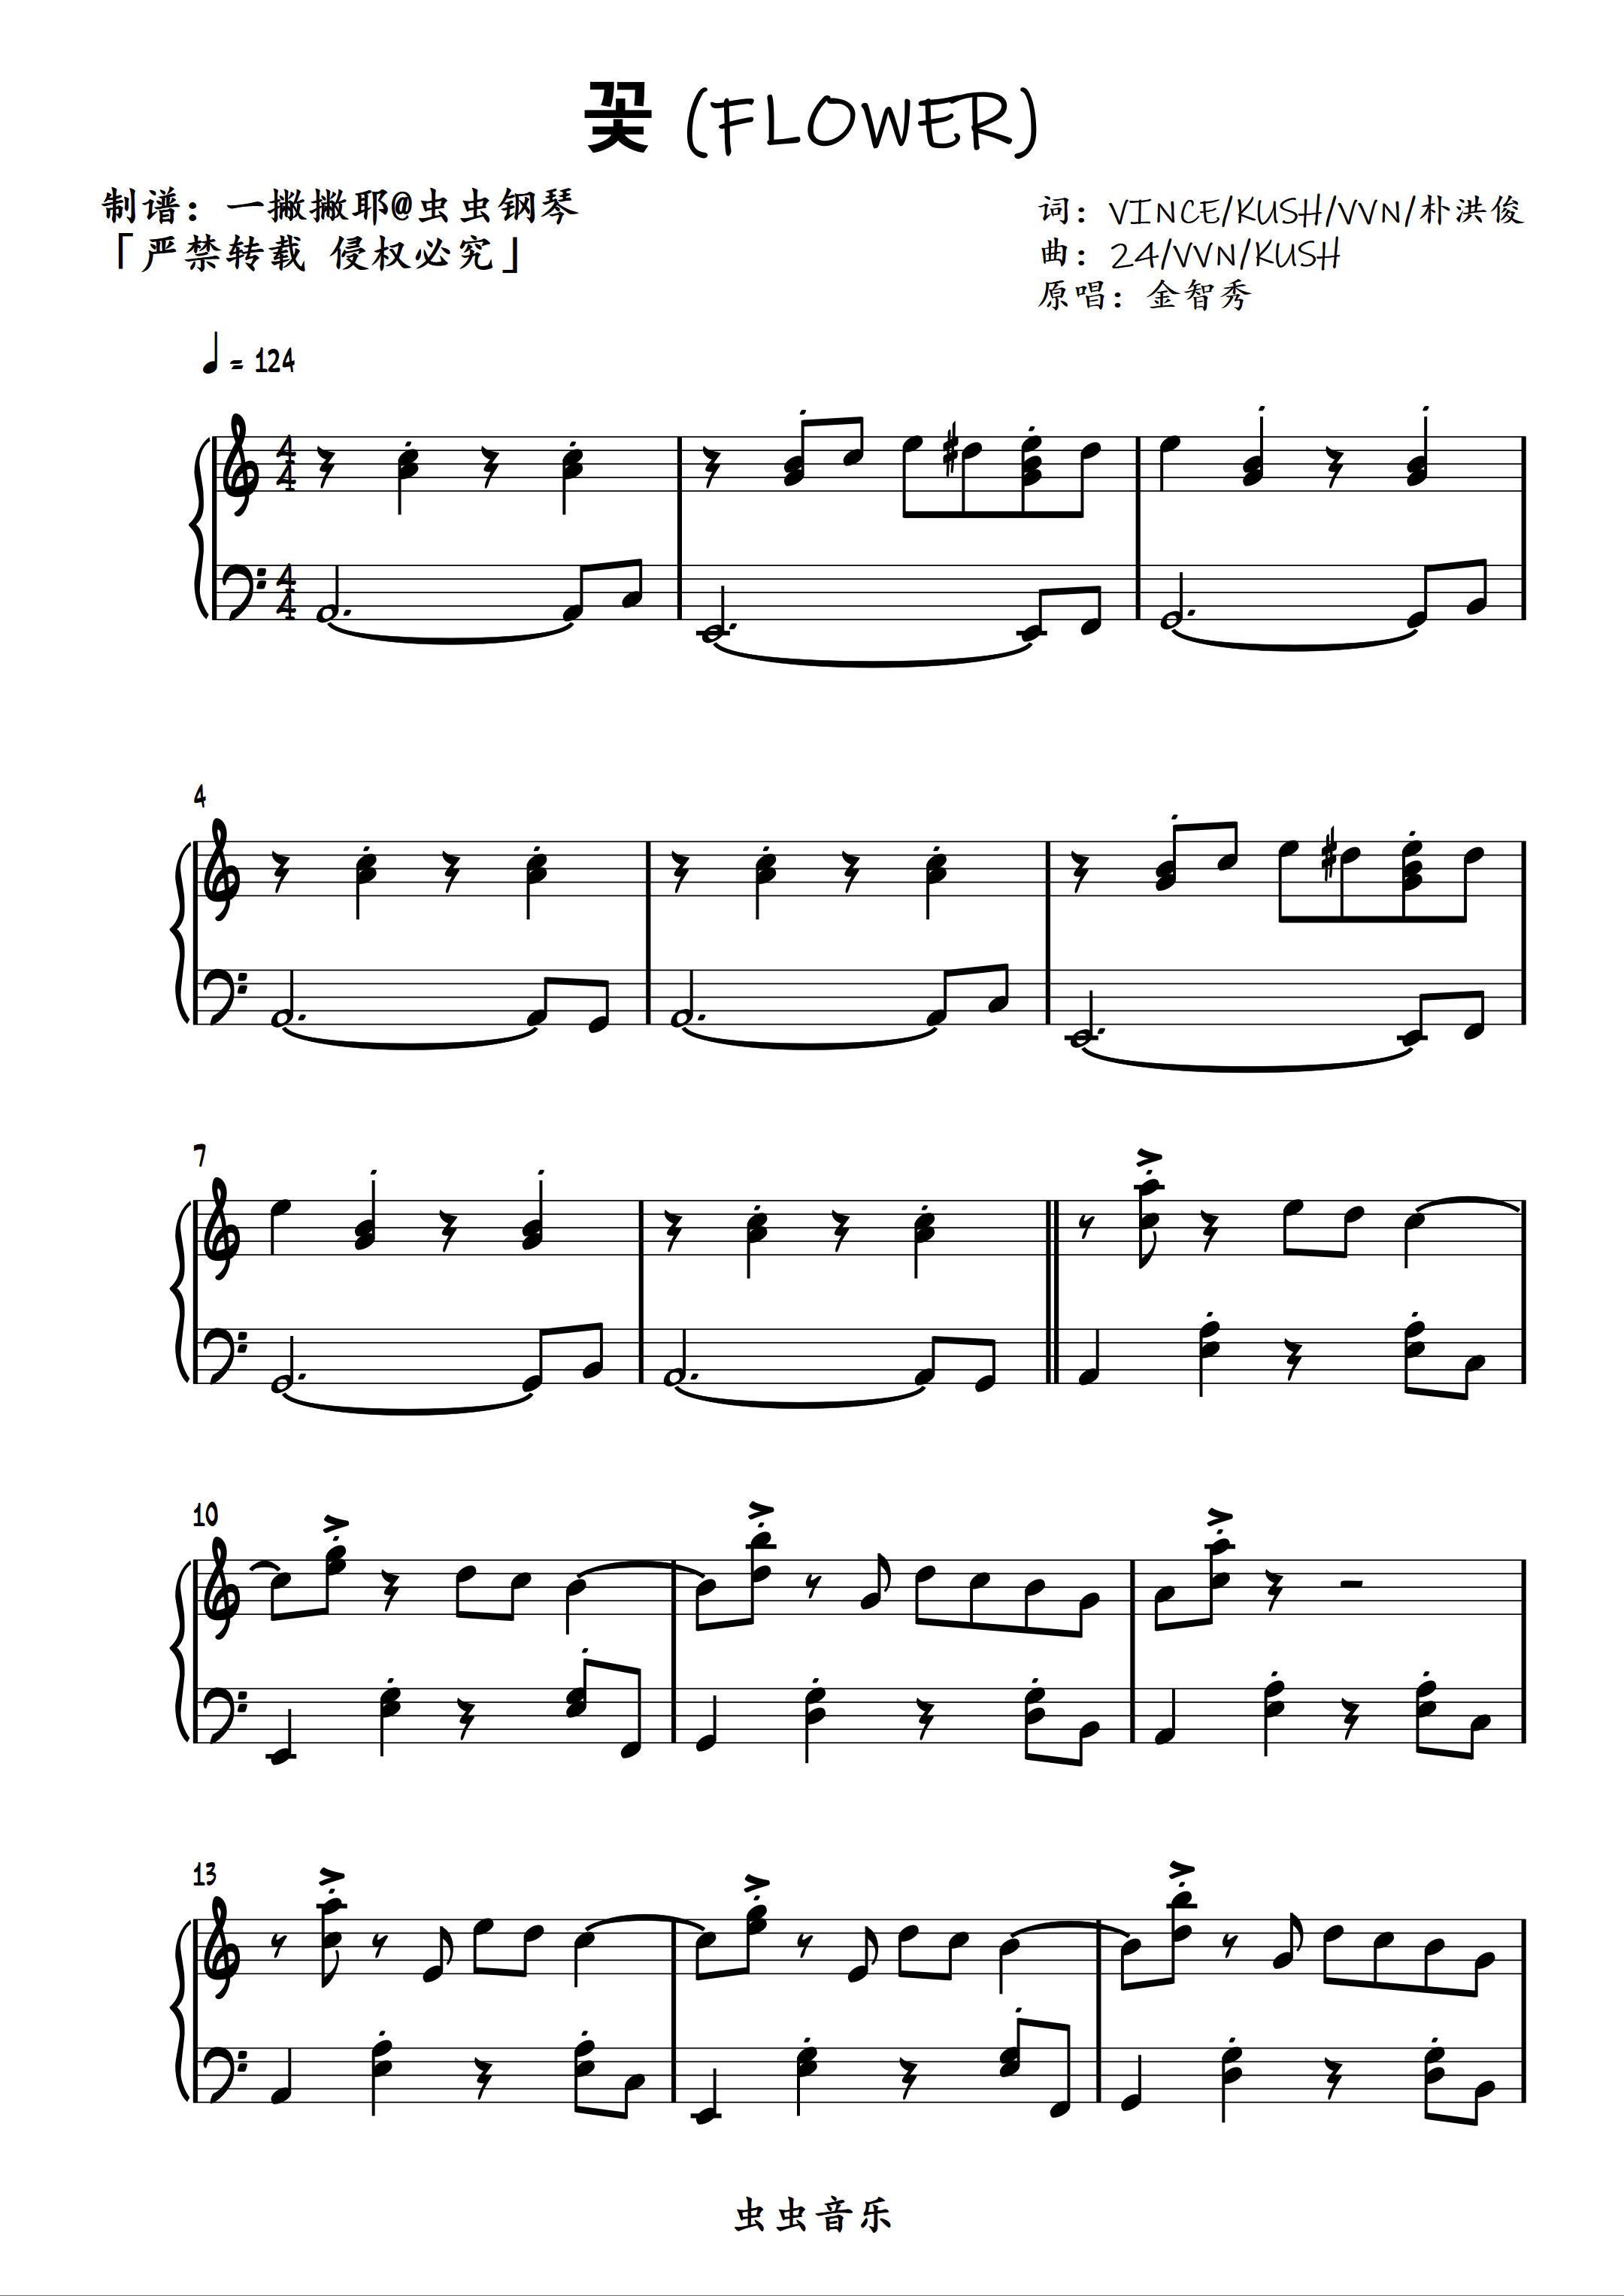 野玫瑰-舒伯特-钢琴谱文件（五线谱、双手简谱、数字谱、Midi、PDF）免费下载